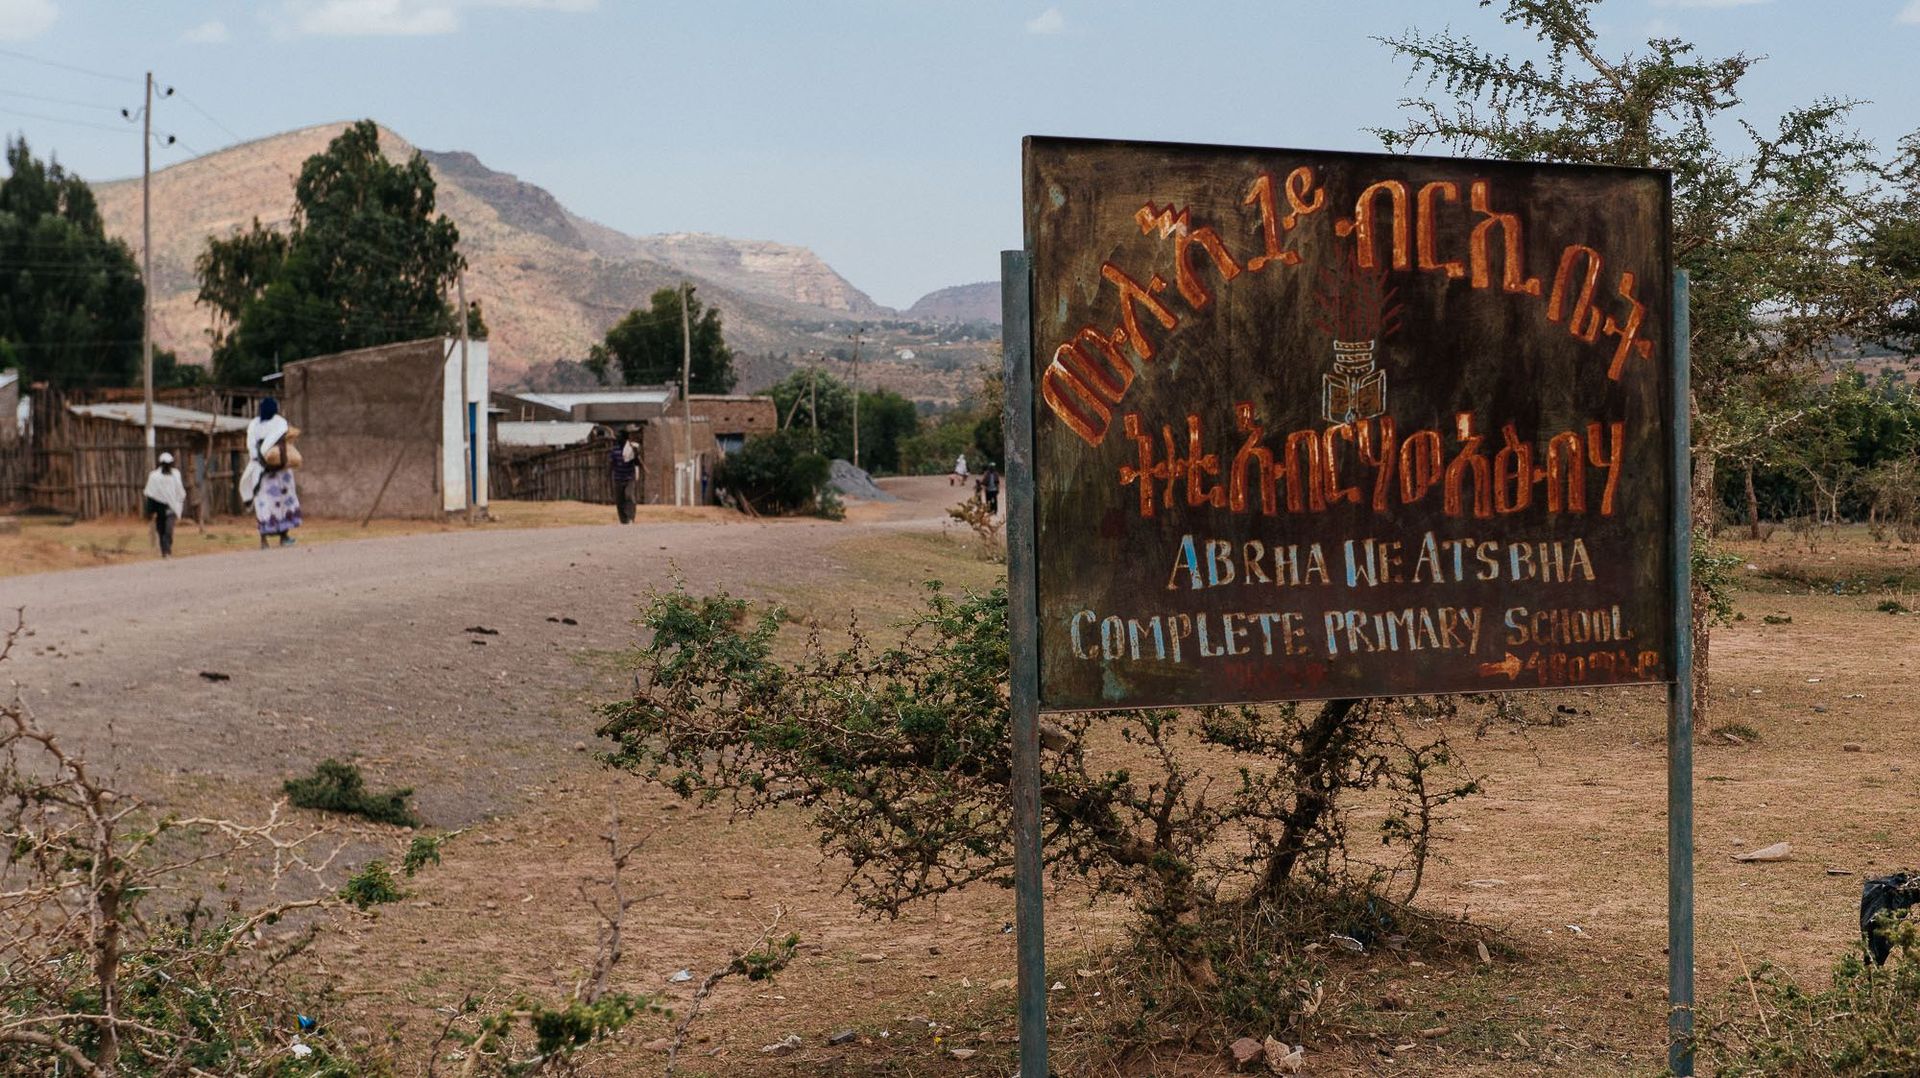 Abrha We Atsbha est un véritable miracle écologique, un village modèle pour toutes les régions sèches d’Éthiopie.  